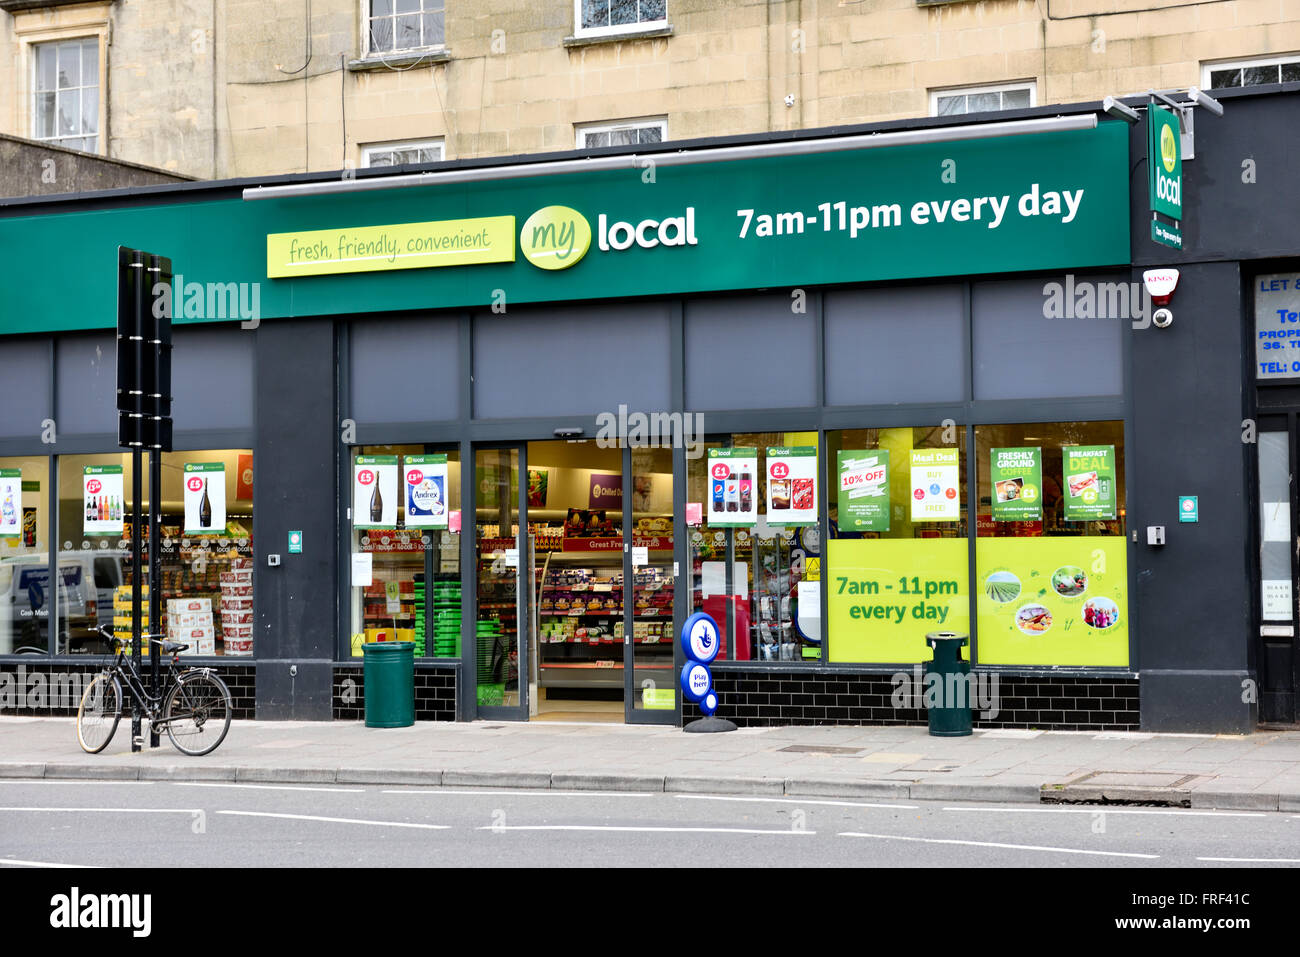 La mia catena locale store in Bristol, Regno Unito Foto Stock